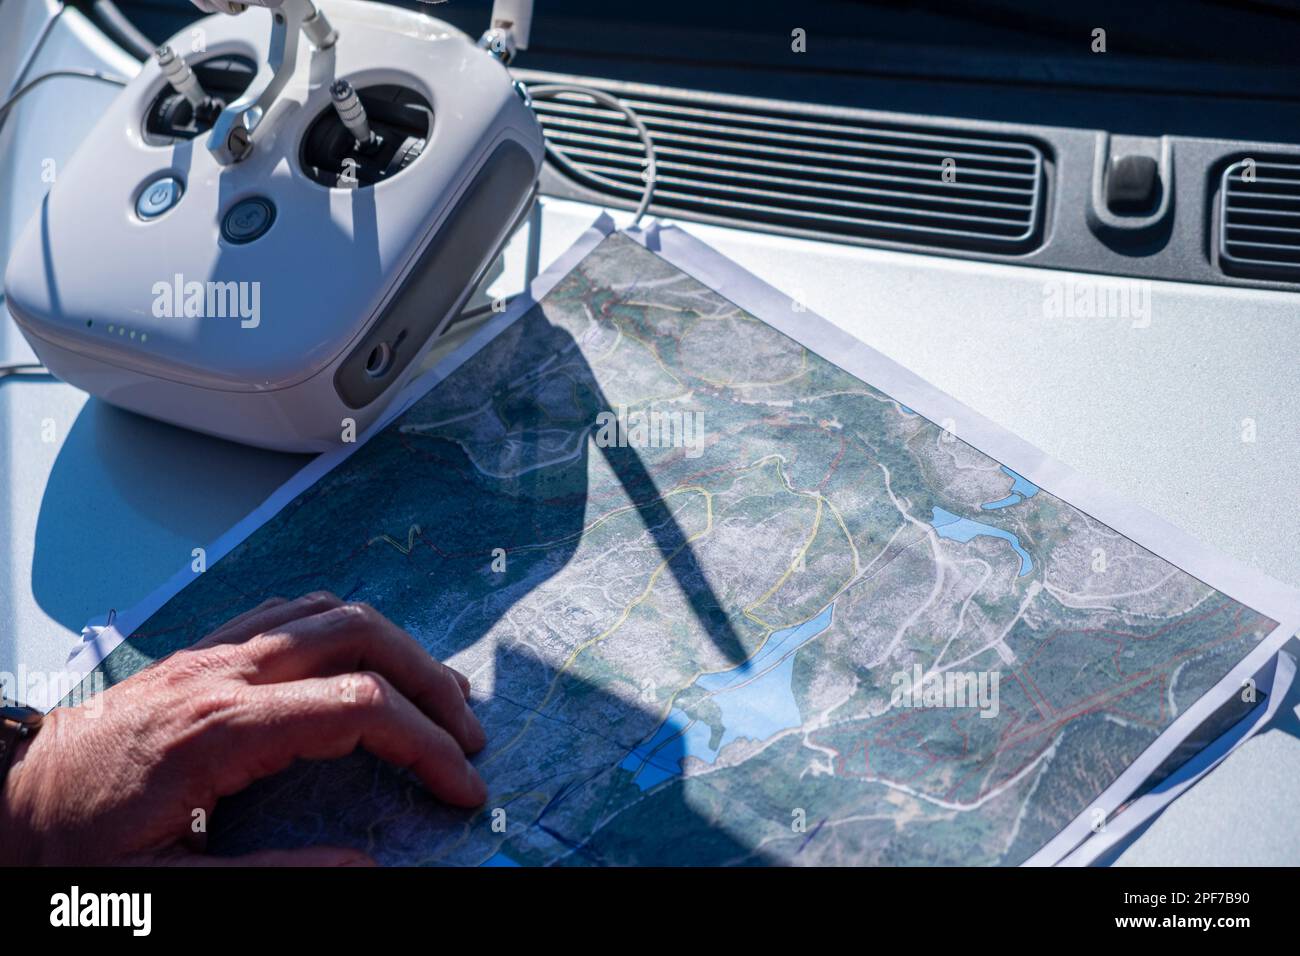 Madrid, Spagna. 03 03 2023: Controllo radio di un drone phantom 4 pro, una foto aerea stampata e una mano dell'uomo. Foto Stock